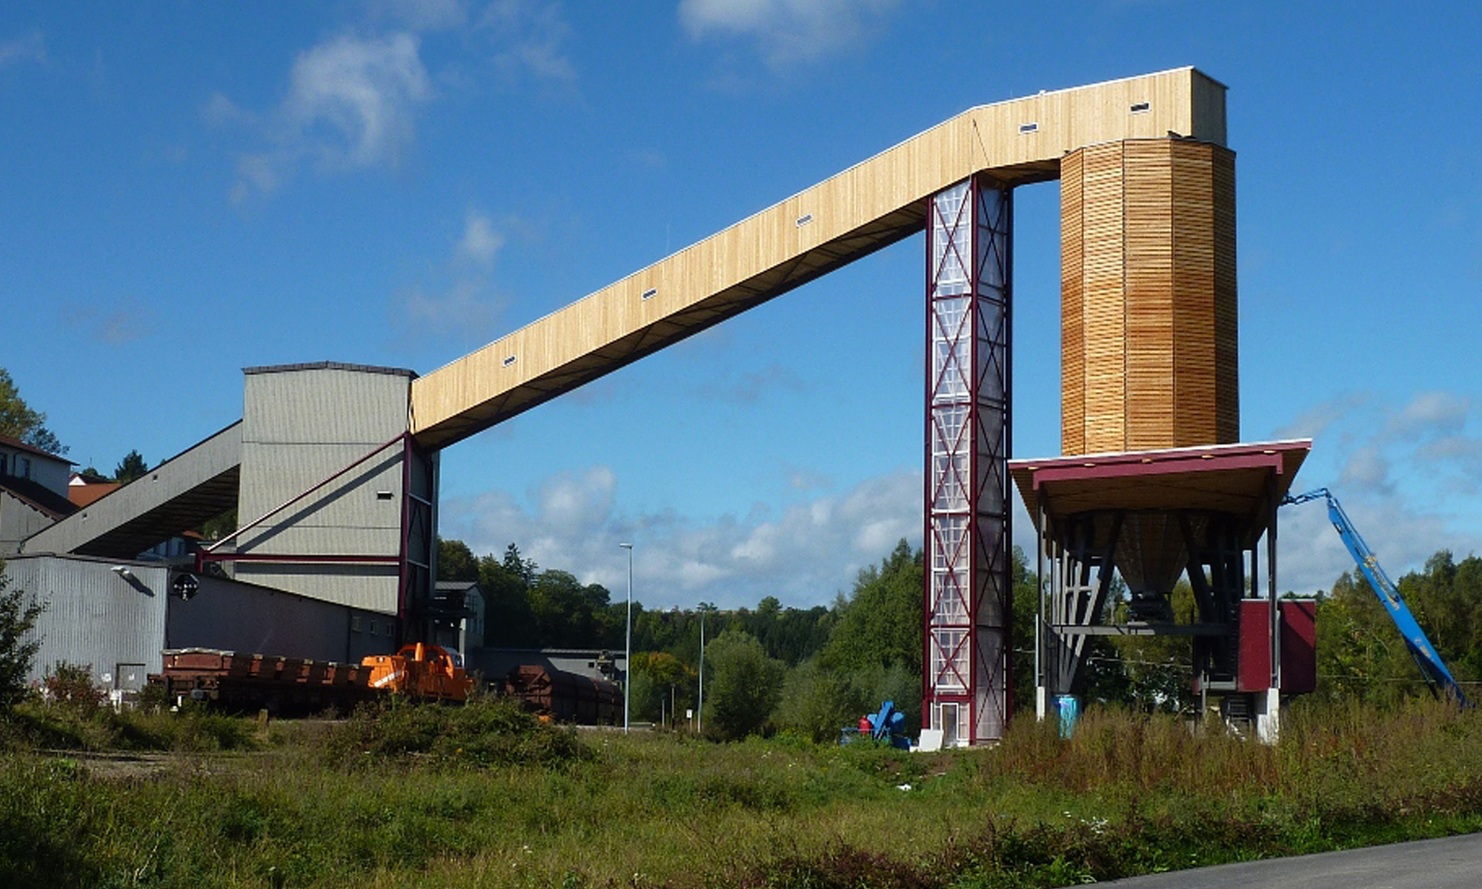 Siloanlage mit Streugutsilo, Verladeanlage und Fachwerkbrücke in Haigerloch Deutschland